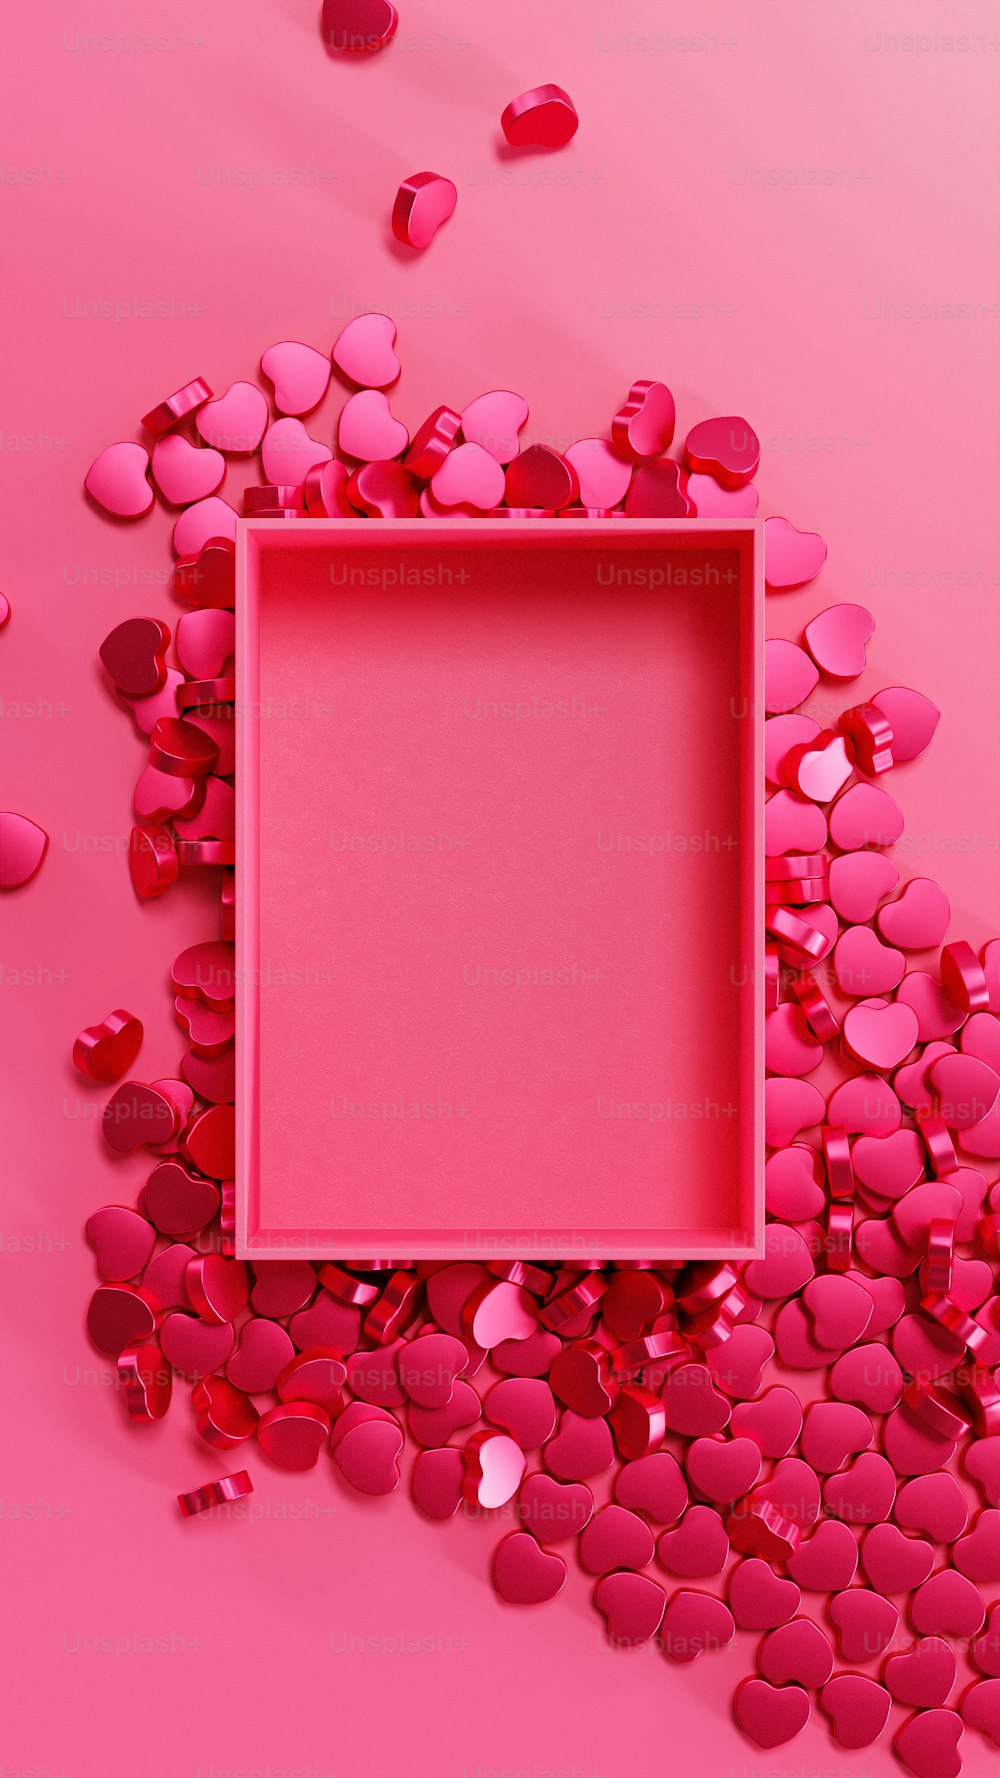 Ein rosa Rahmen, umgeben von Herzen auf rosa Hintergrund